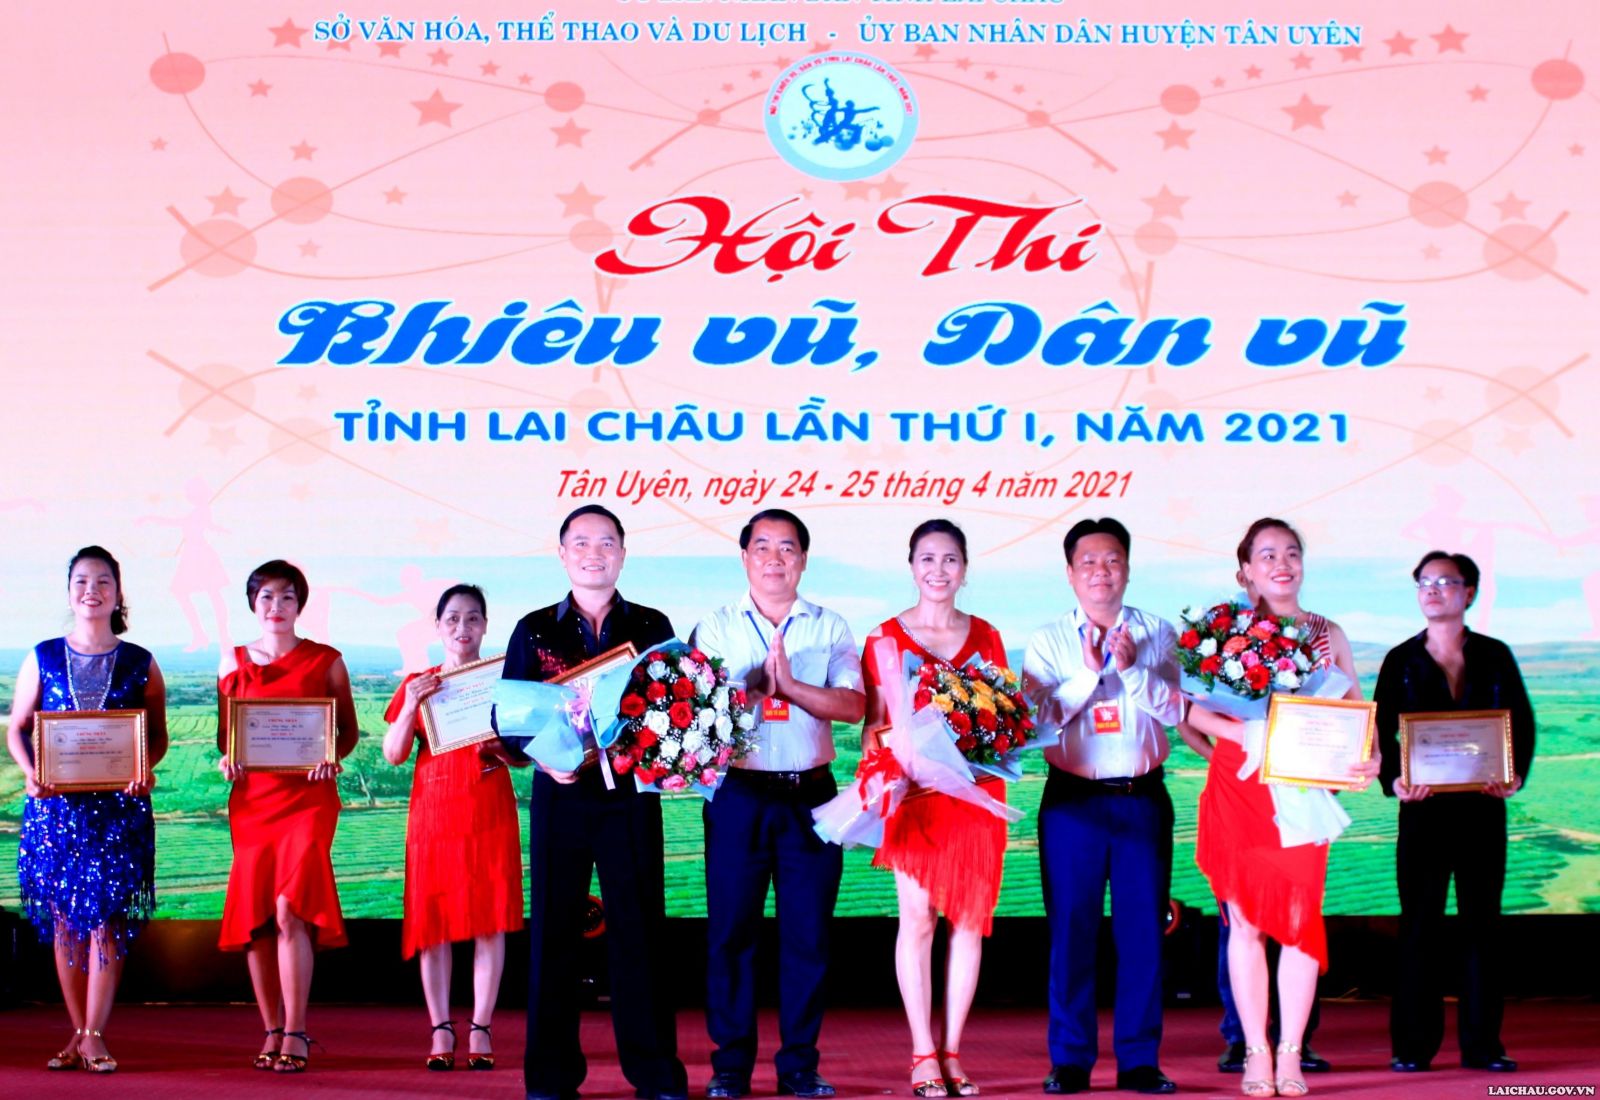 Hội thi khiêu vũ, dân vũ tỉnh Lai Châu lần thứ nhất, năm 2021